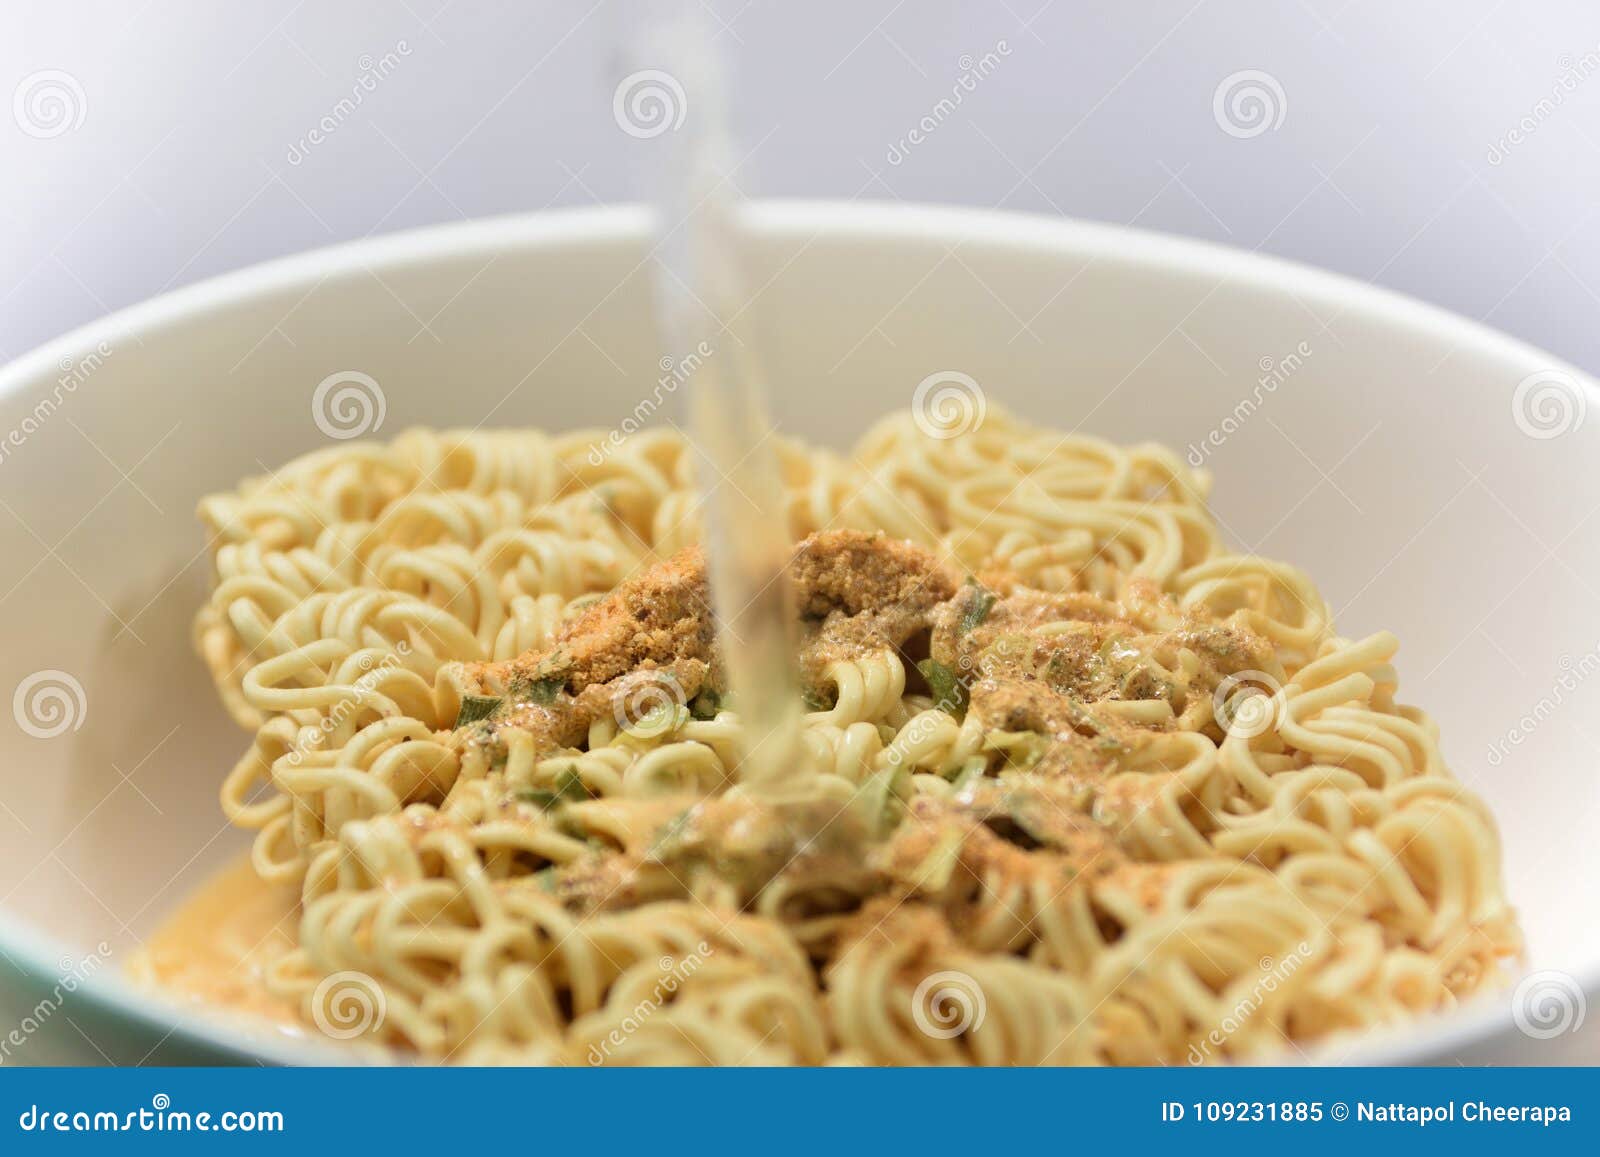 close up instant noodle soup flavor